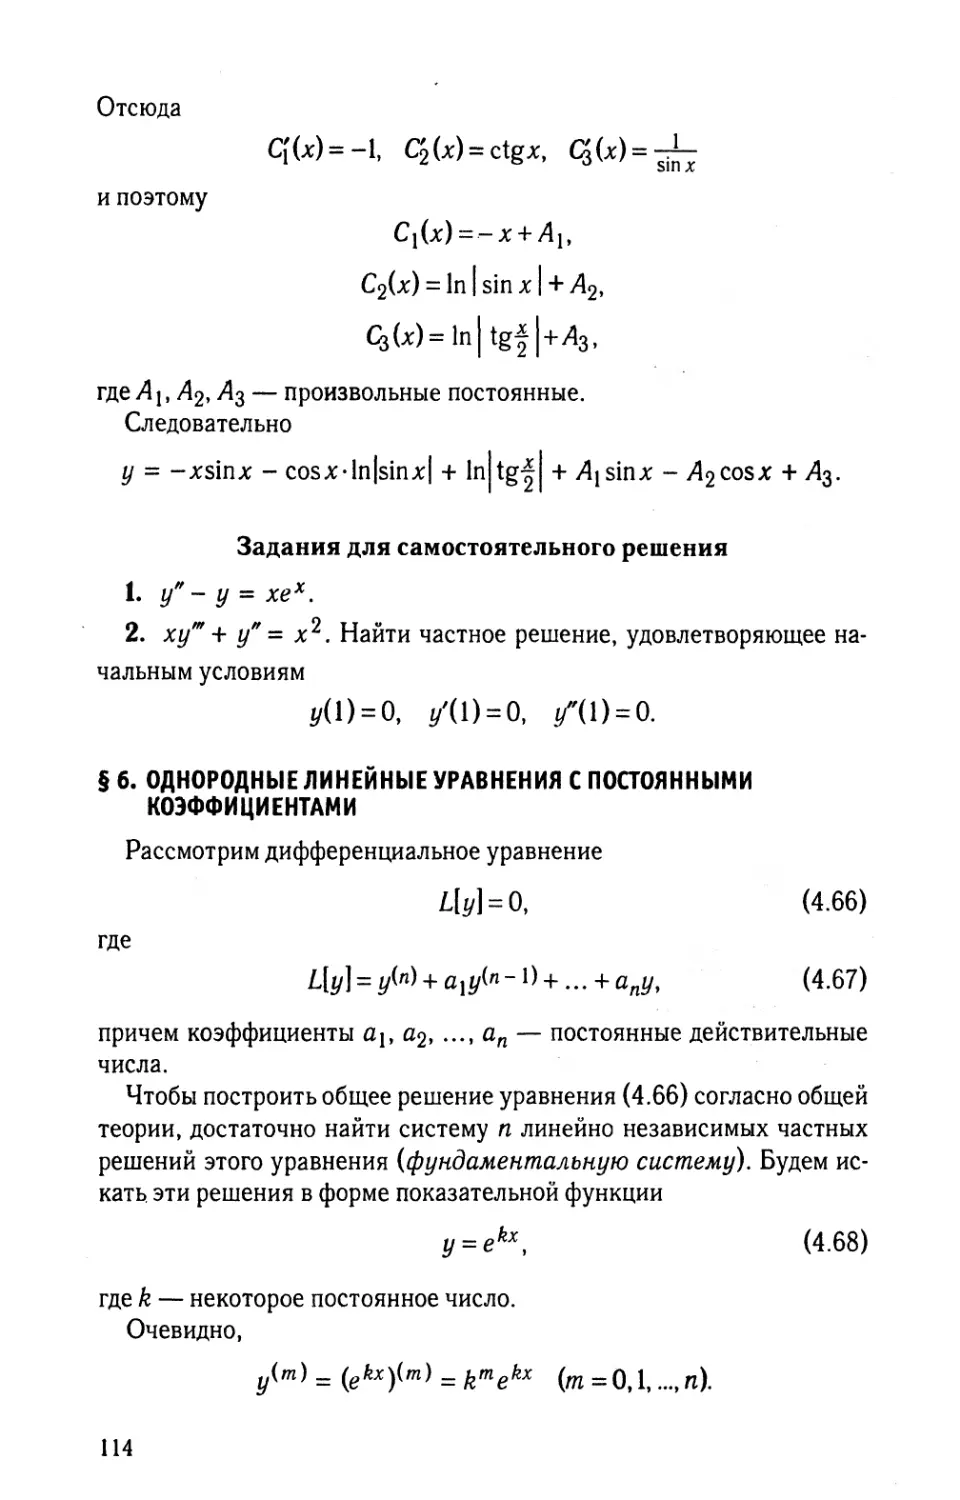 § 6. Однородные линейные уравнения с постоянными коэффициентами